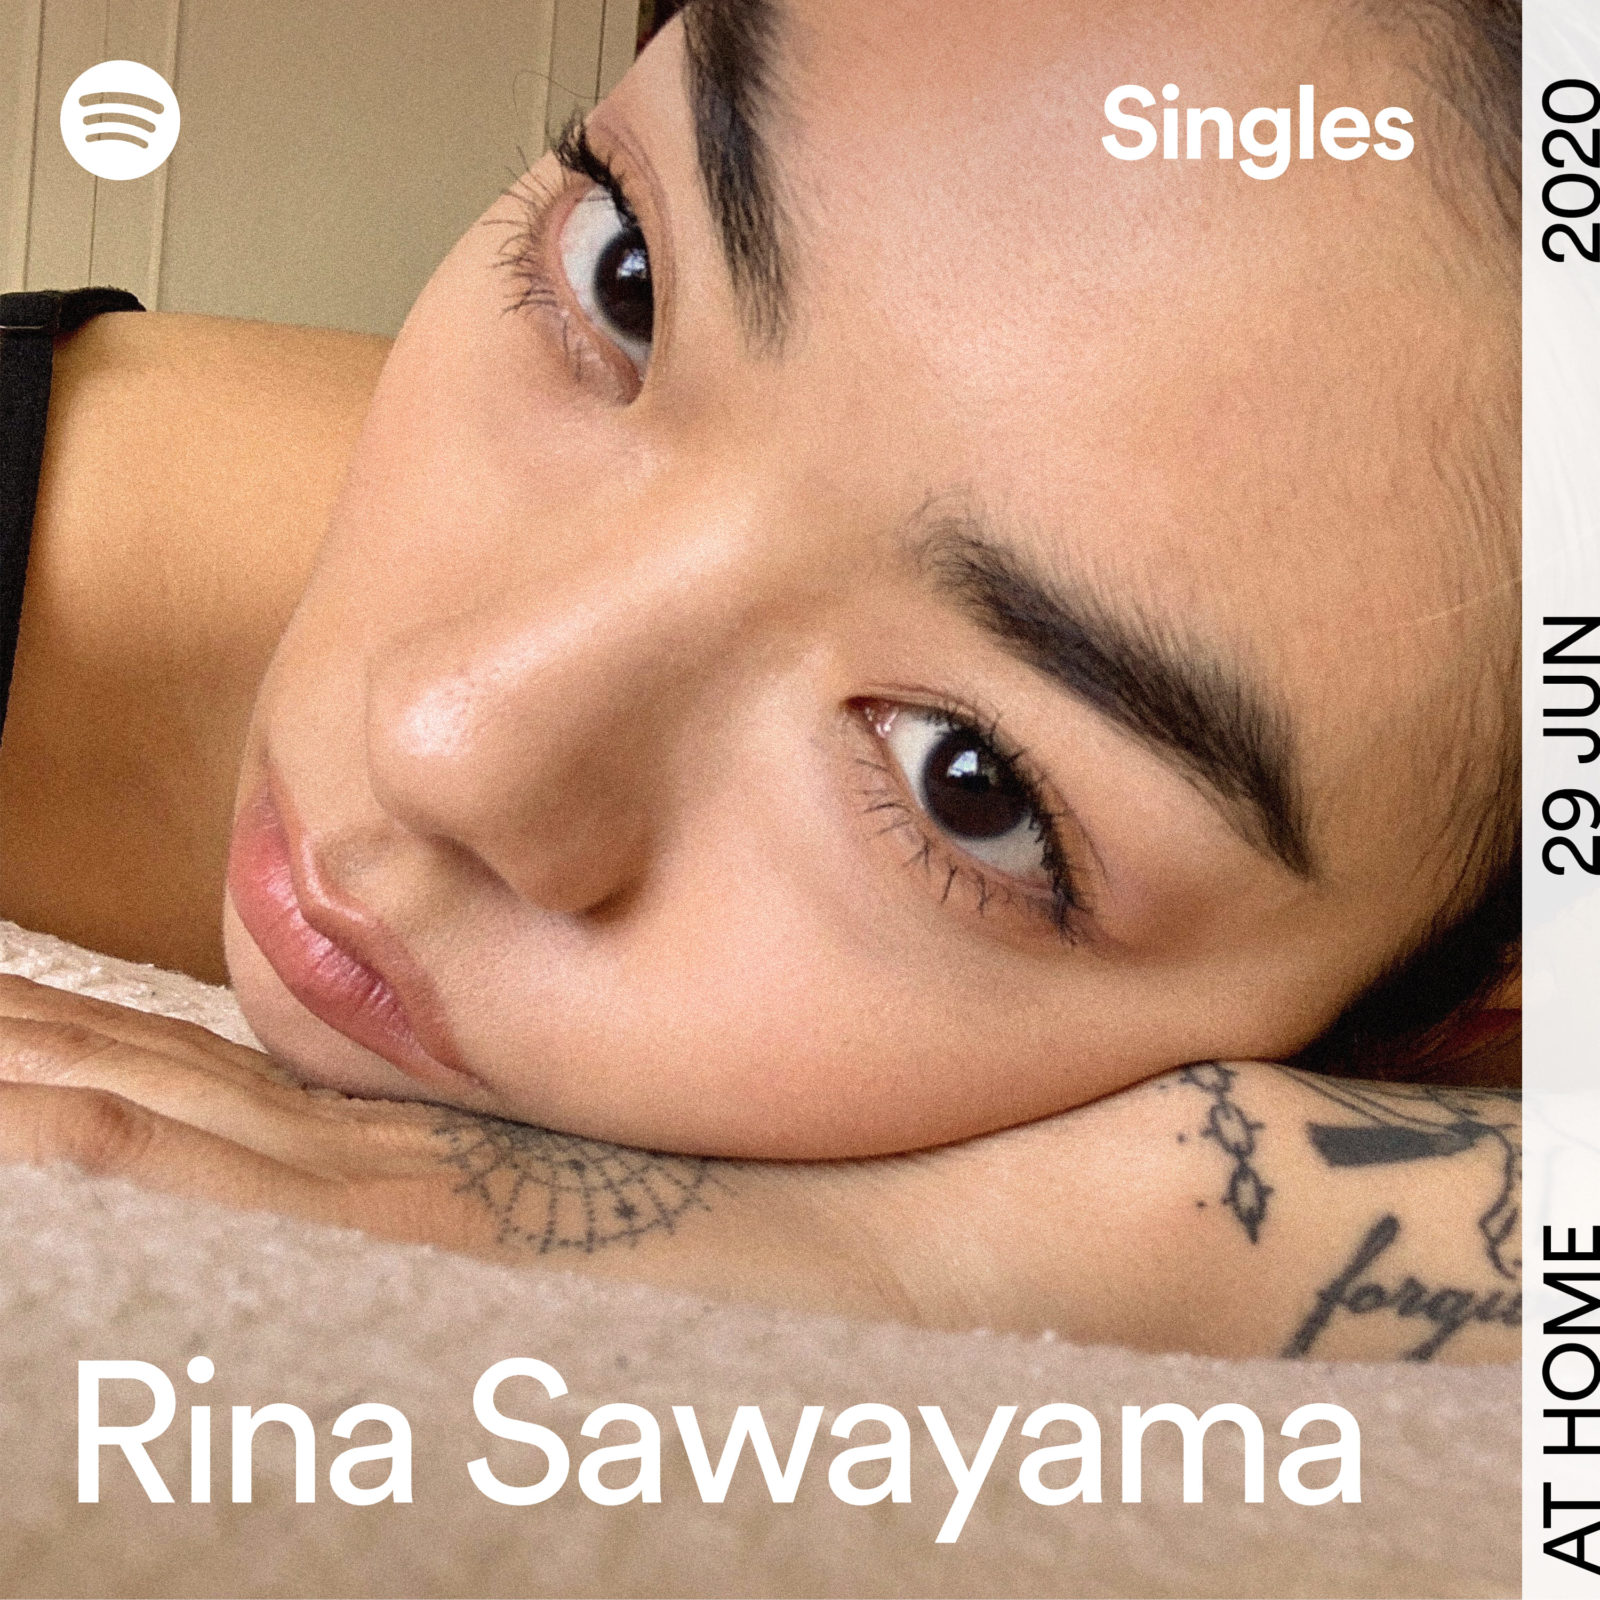 リナ・サワヤマ、Spotifyの人気プログラムでレディー・ガガの「Dance In The Dark」をカバーリリース